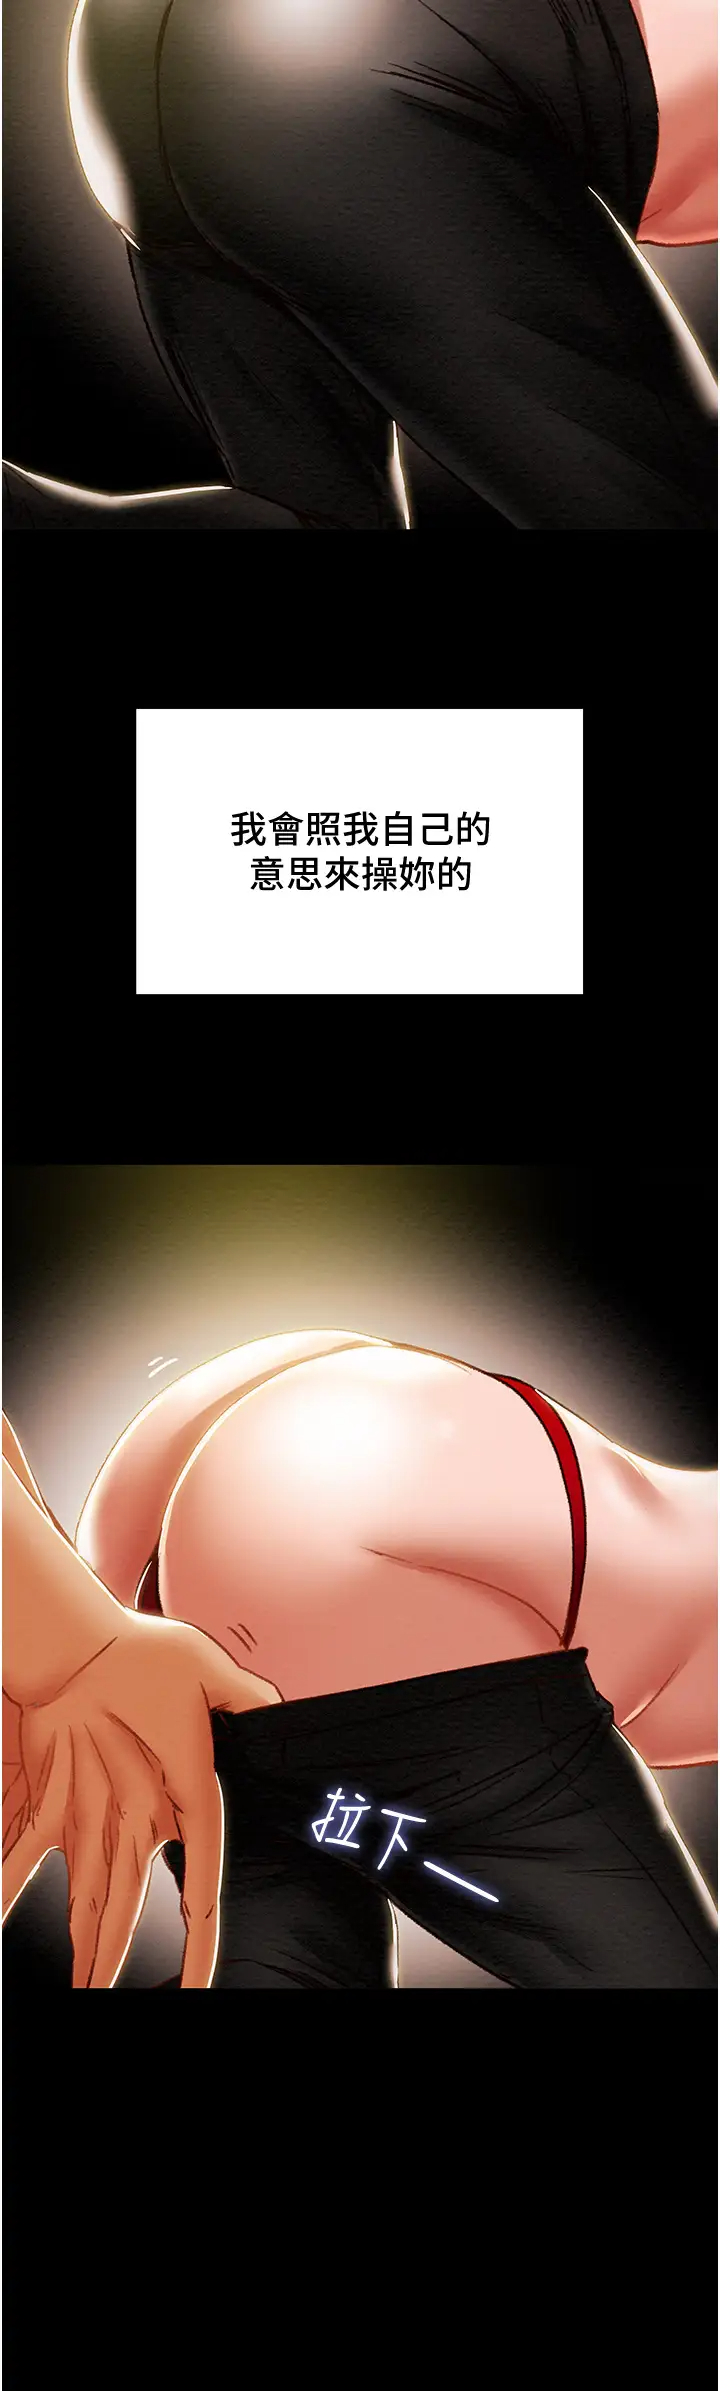 韩国污漫画 純情女攻略計劃 第50话陷进小穴的性感丁字裤 21